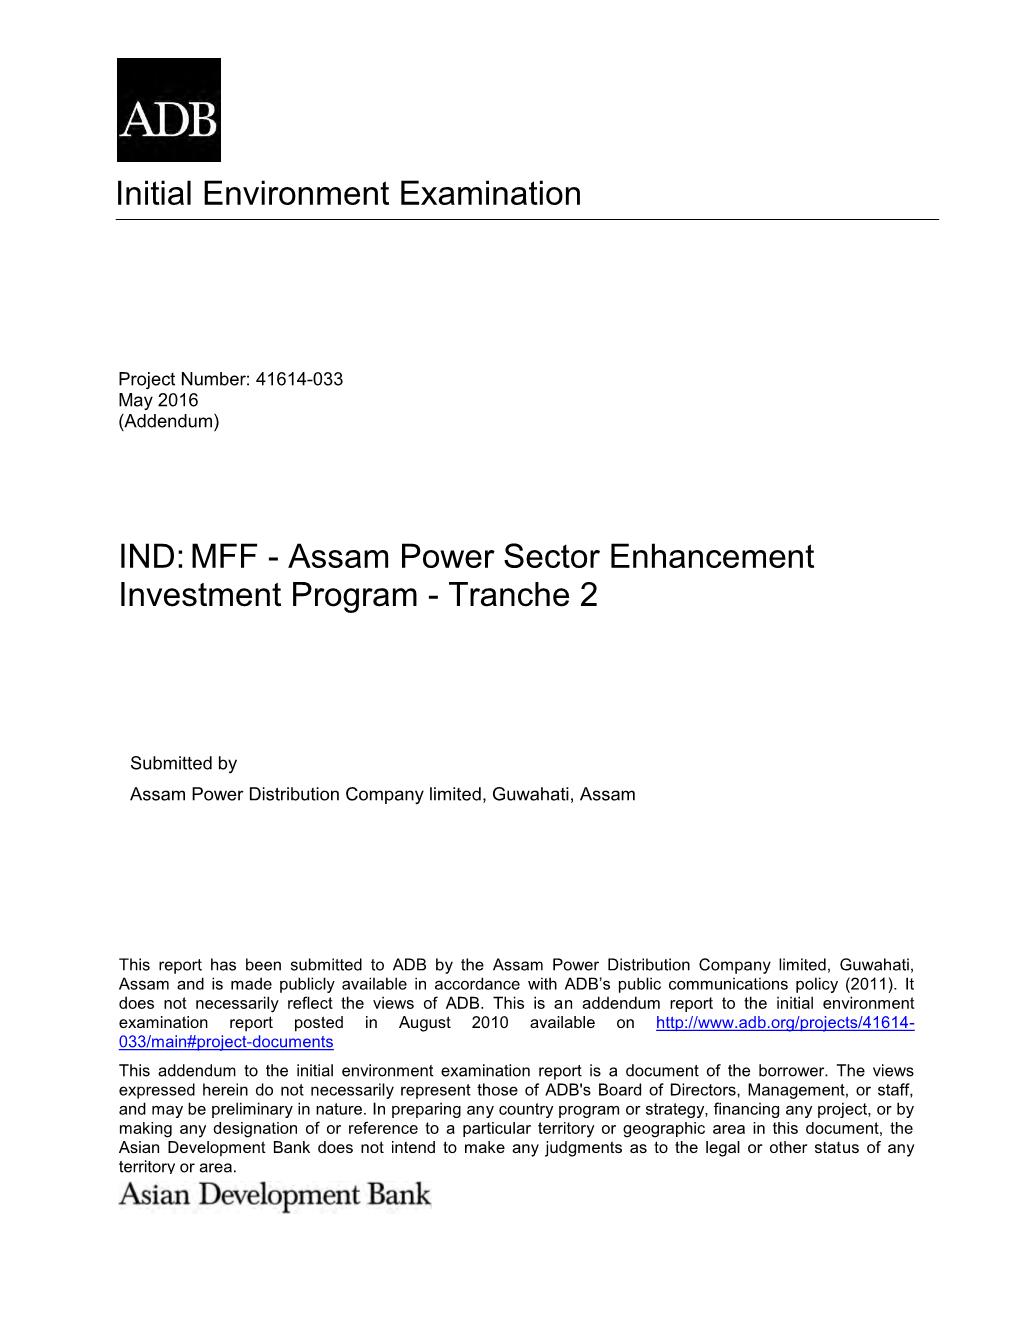 Assam Power Sector Enhancement Investment Program - Tranche 2